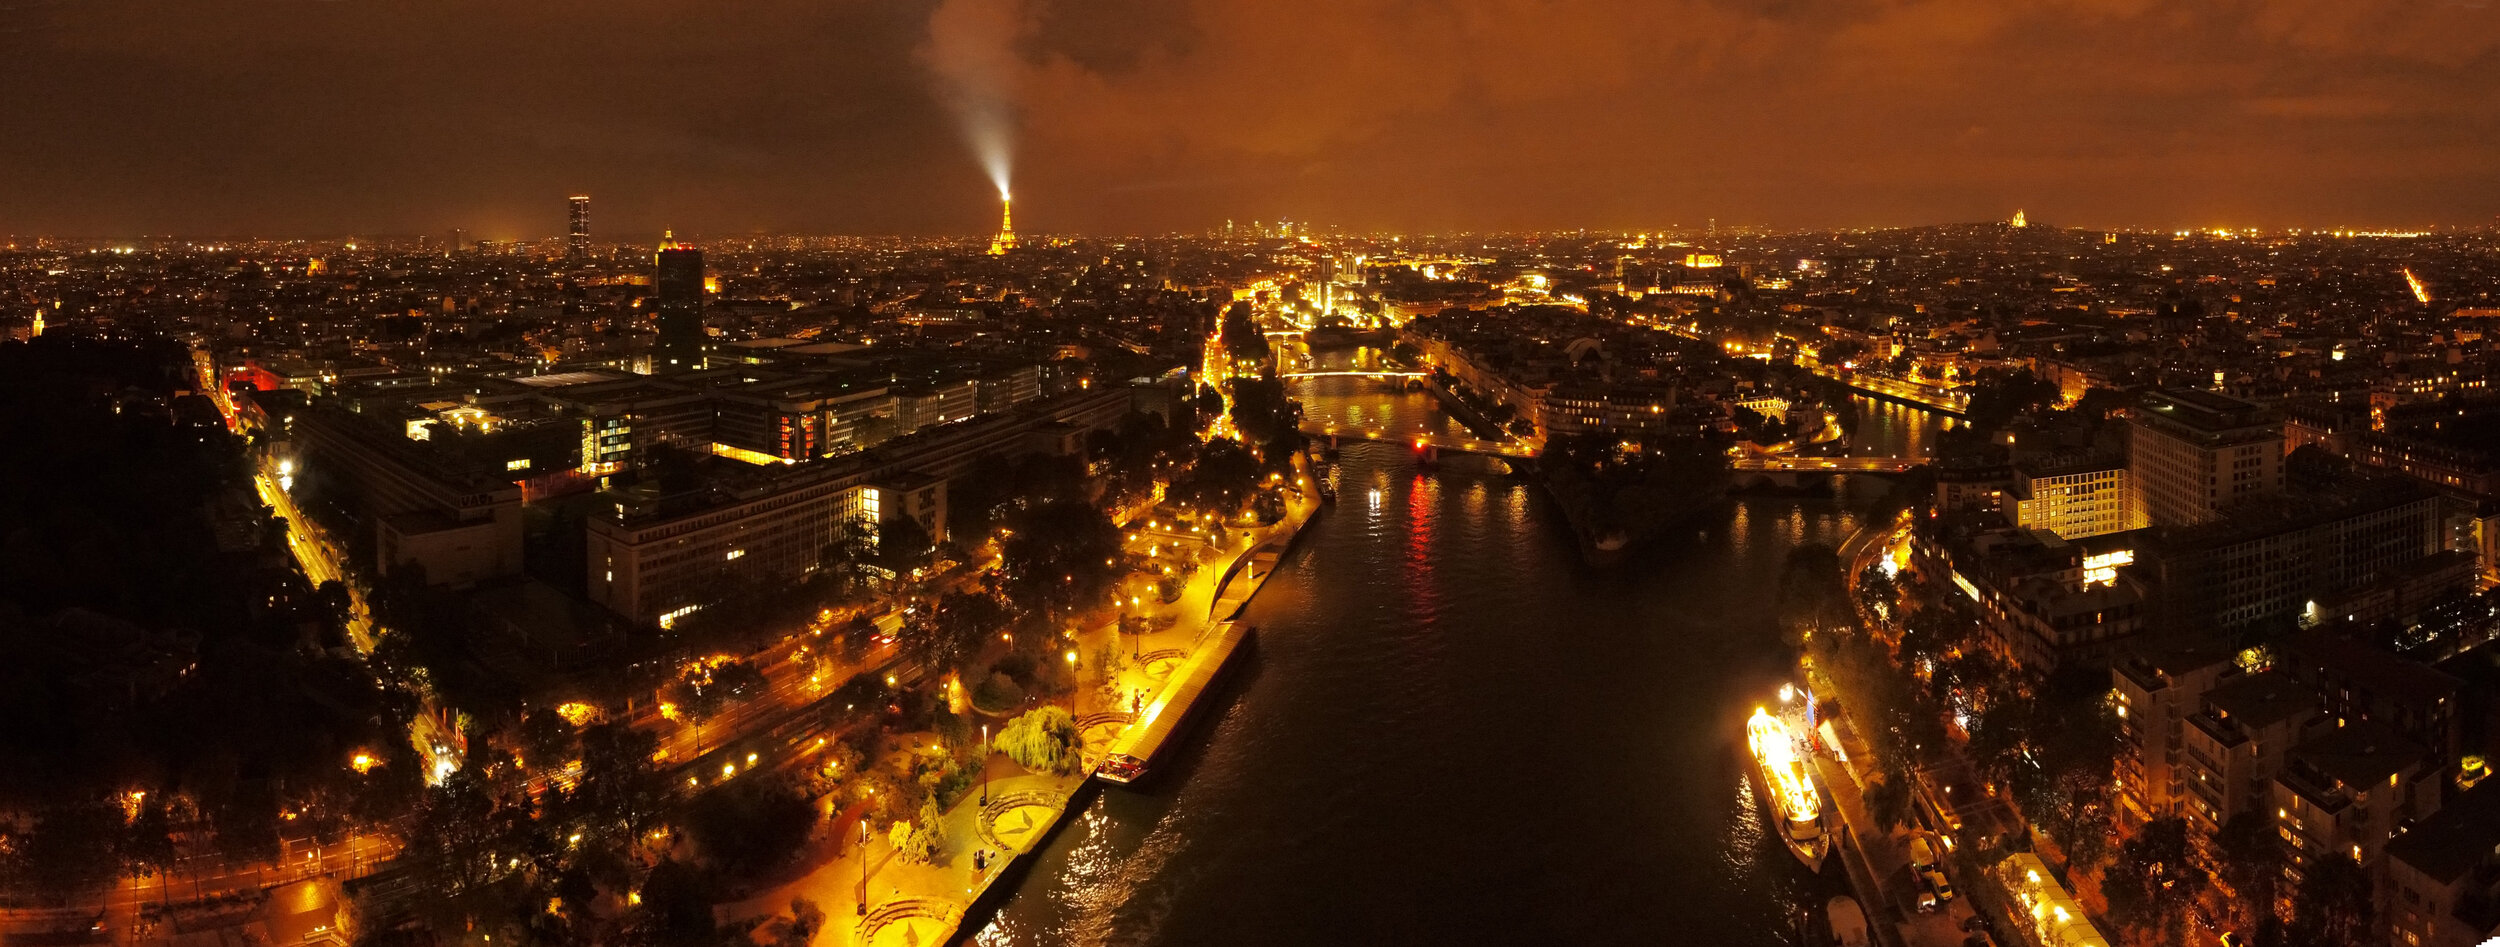 Paris at night.